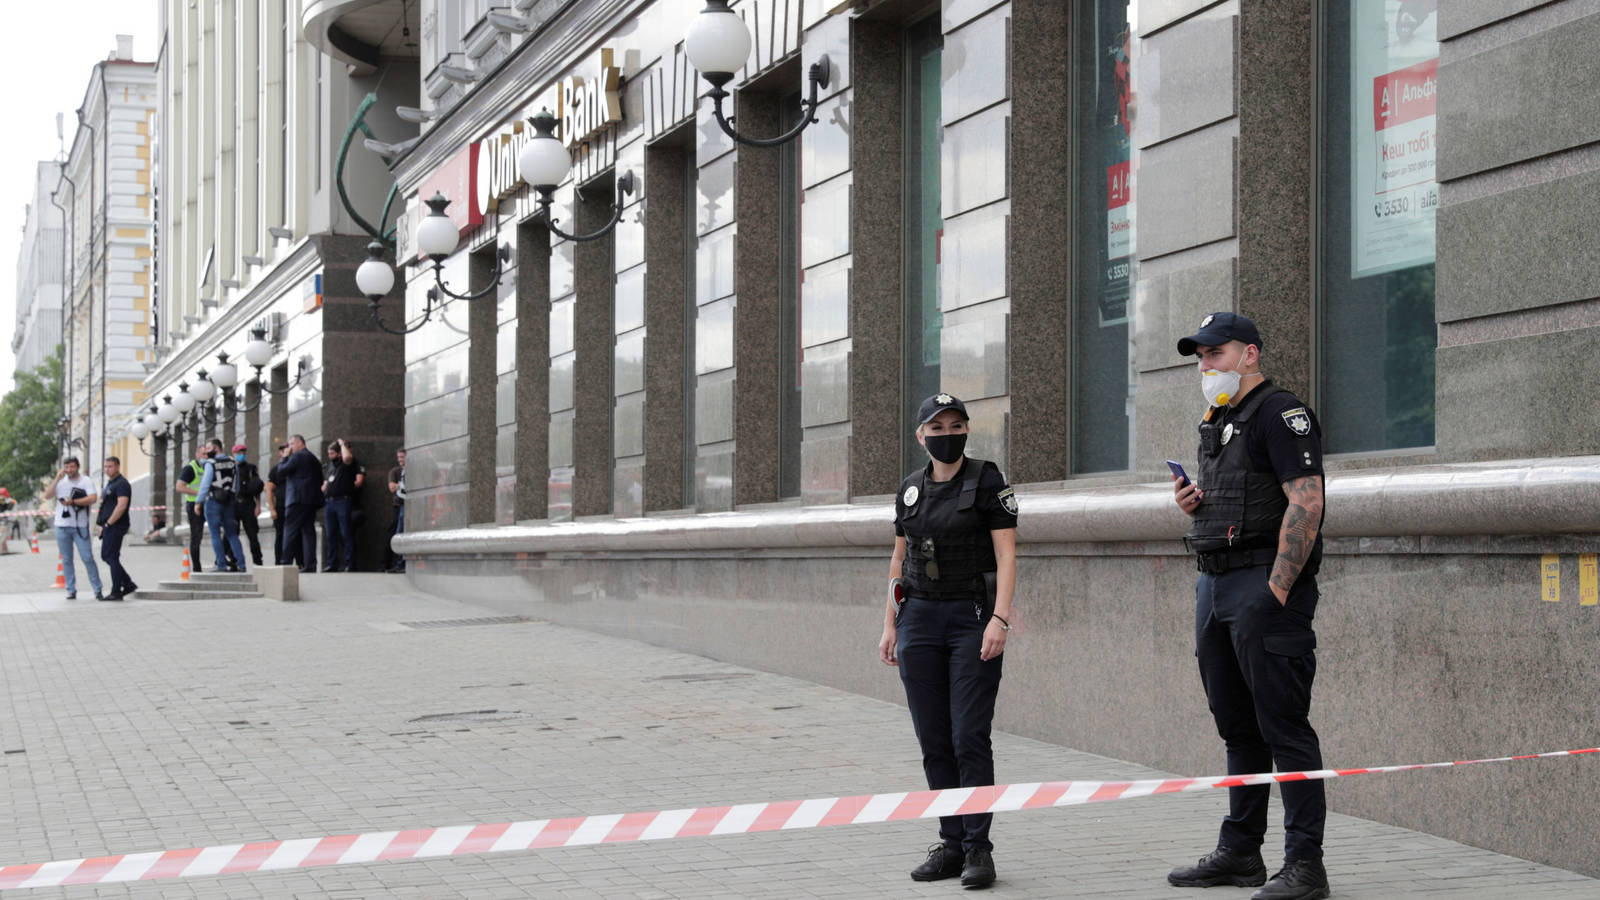 Κίεβο: Χειροπέδες σε άνδρα που απειλούσε να ανατινάξει τράπεζα – Κρατούσε όμηρο (φώτο – βίντεο)